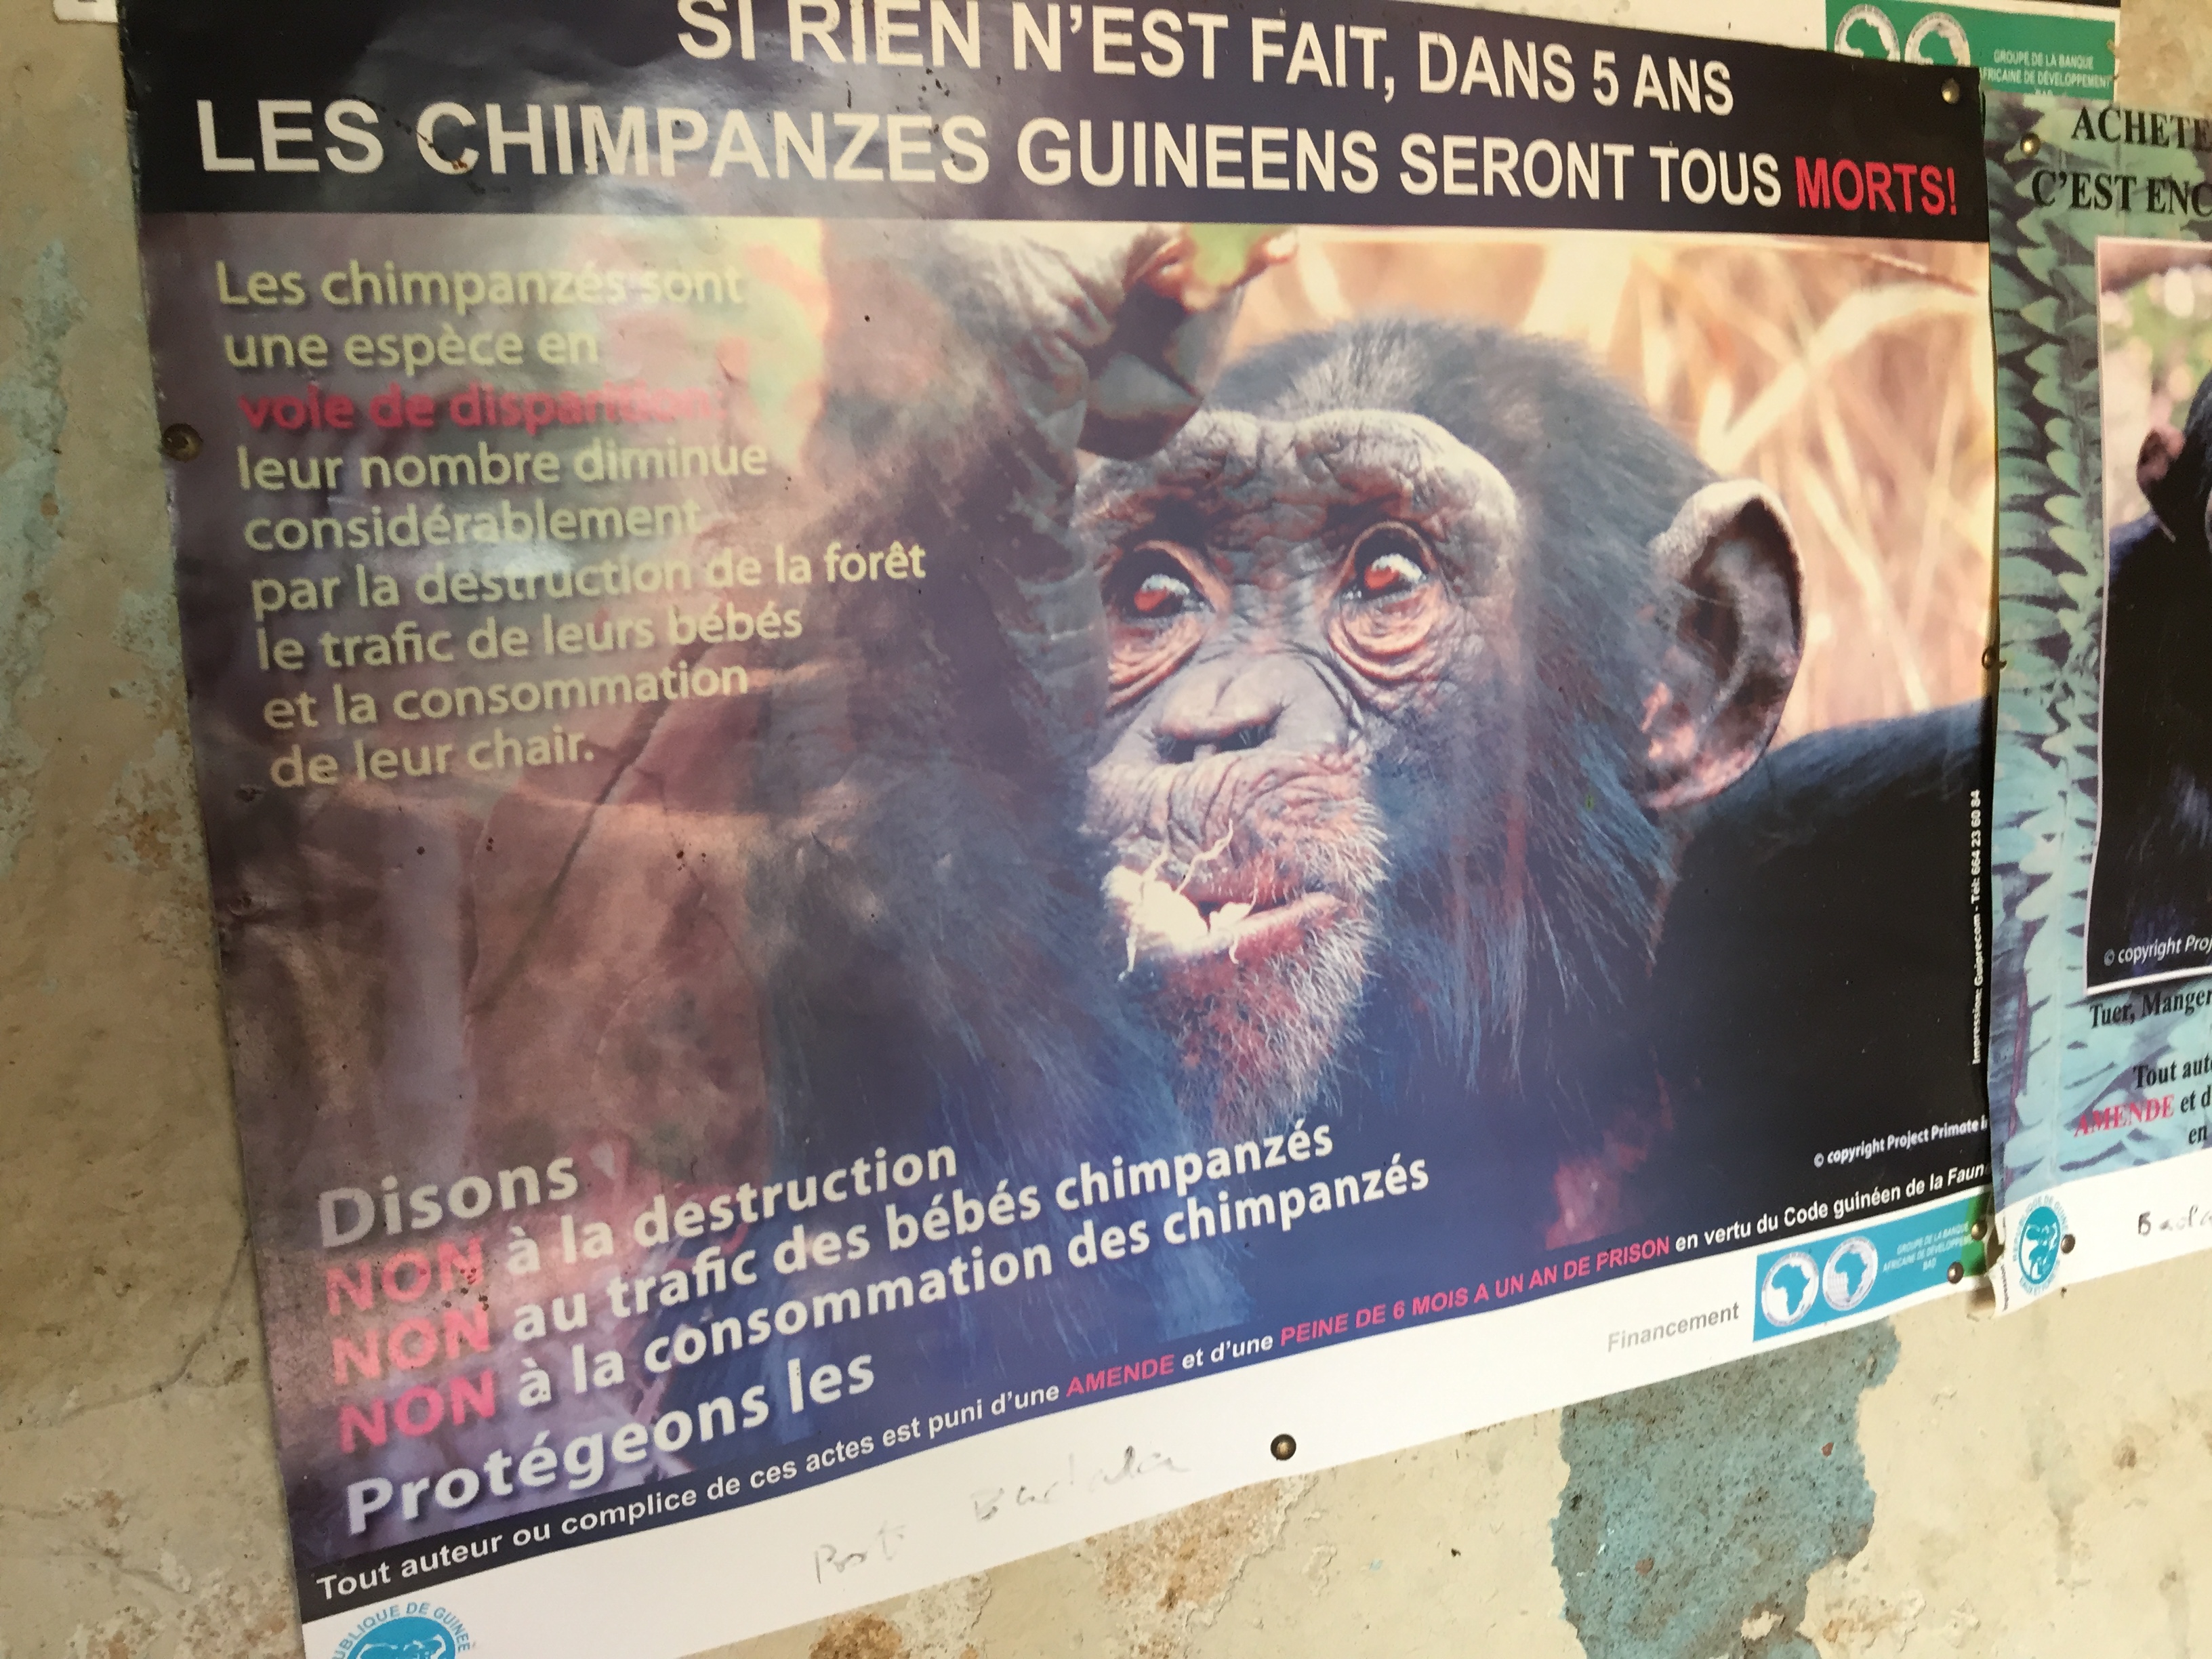 Don't Eat Chimpanzee